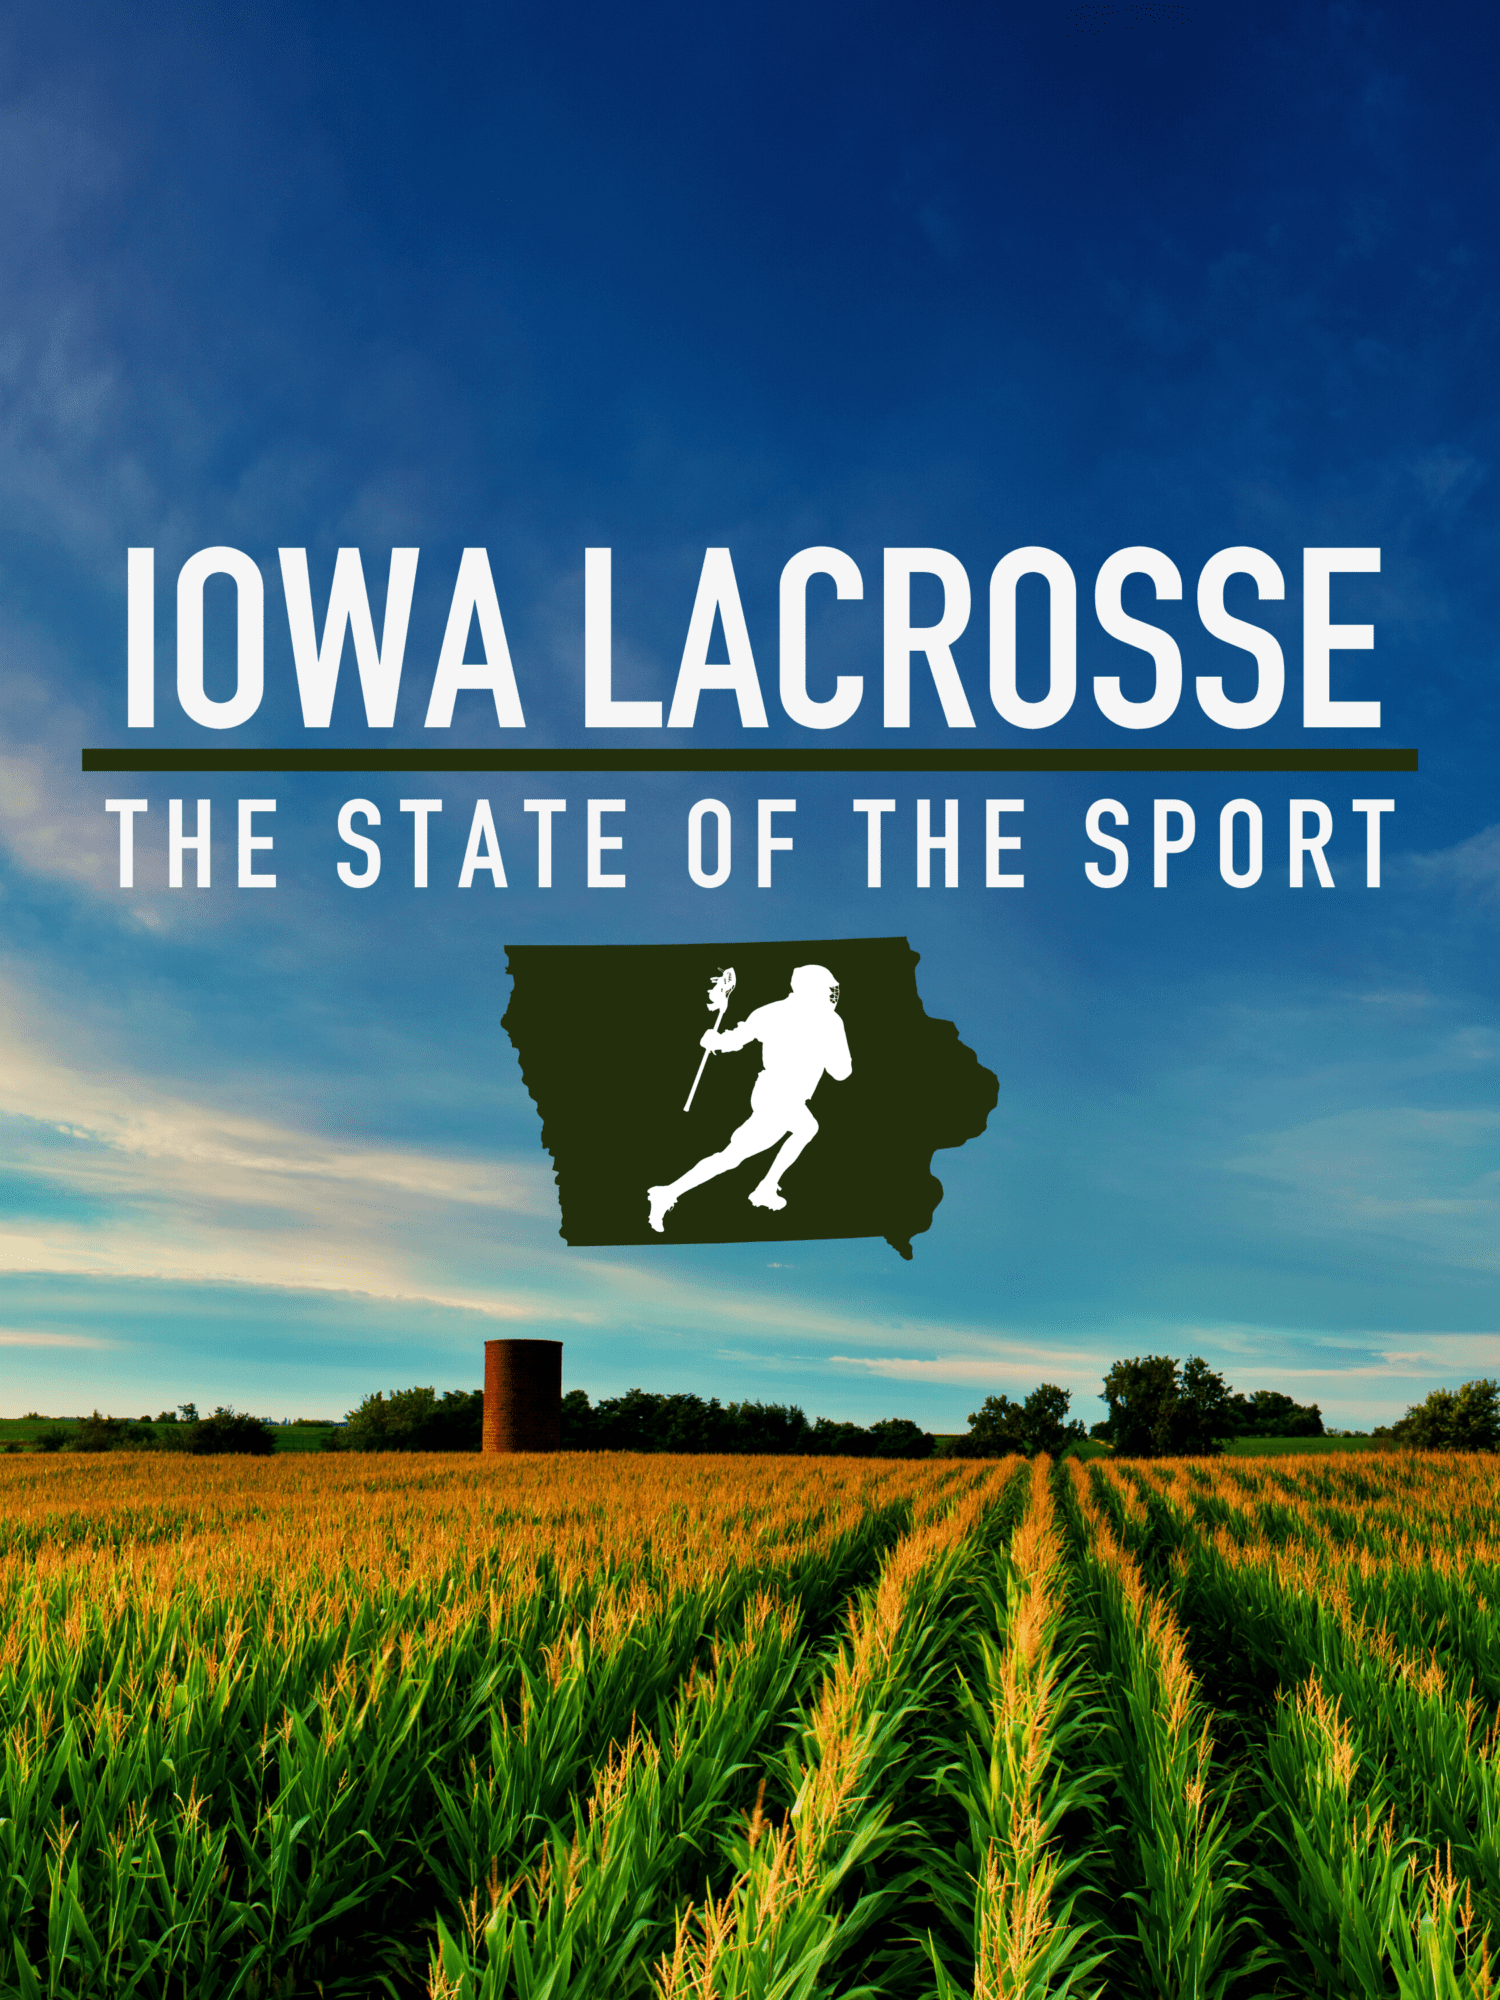 Iowa lacrosse